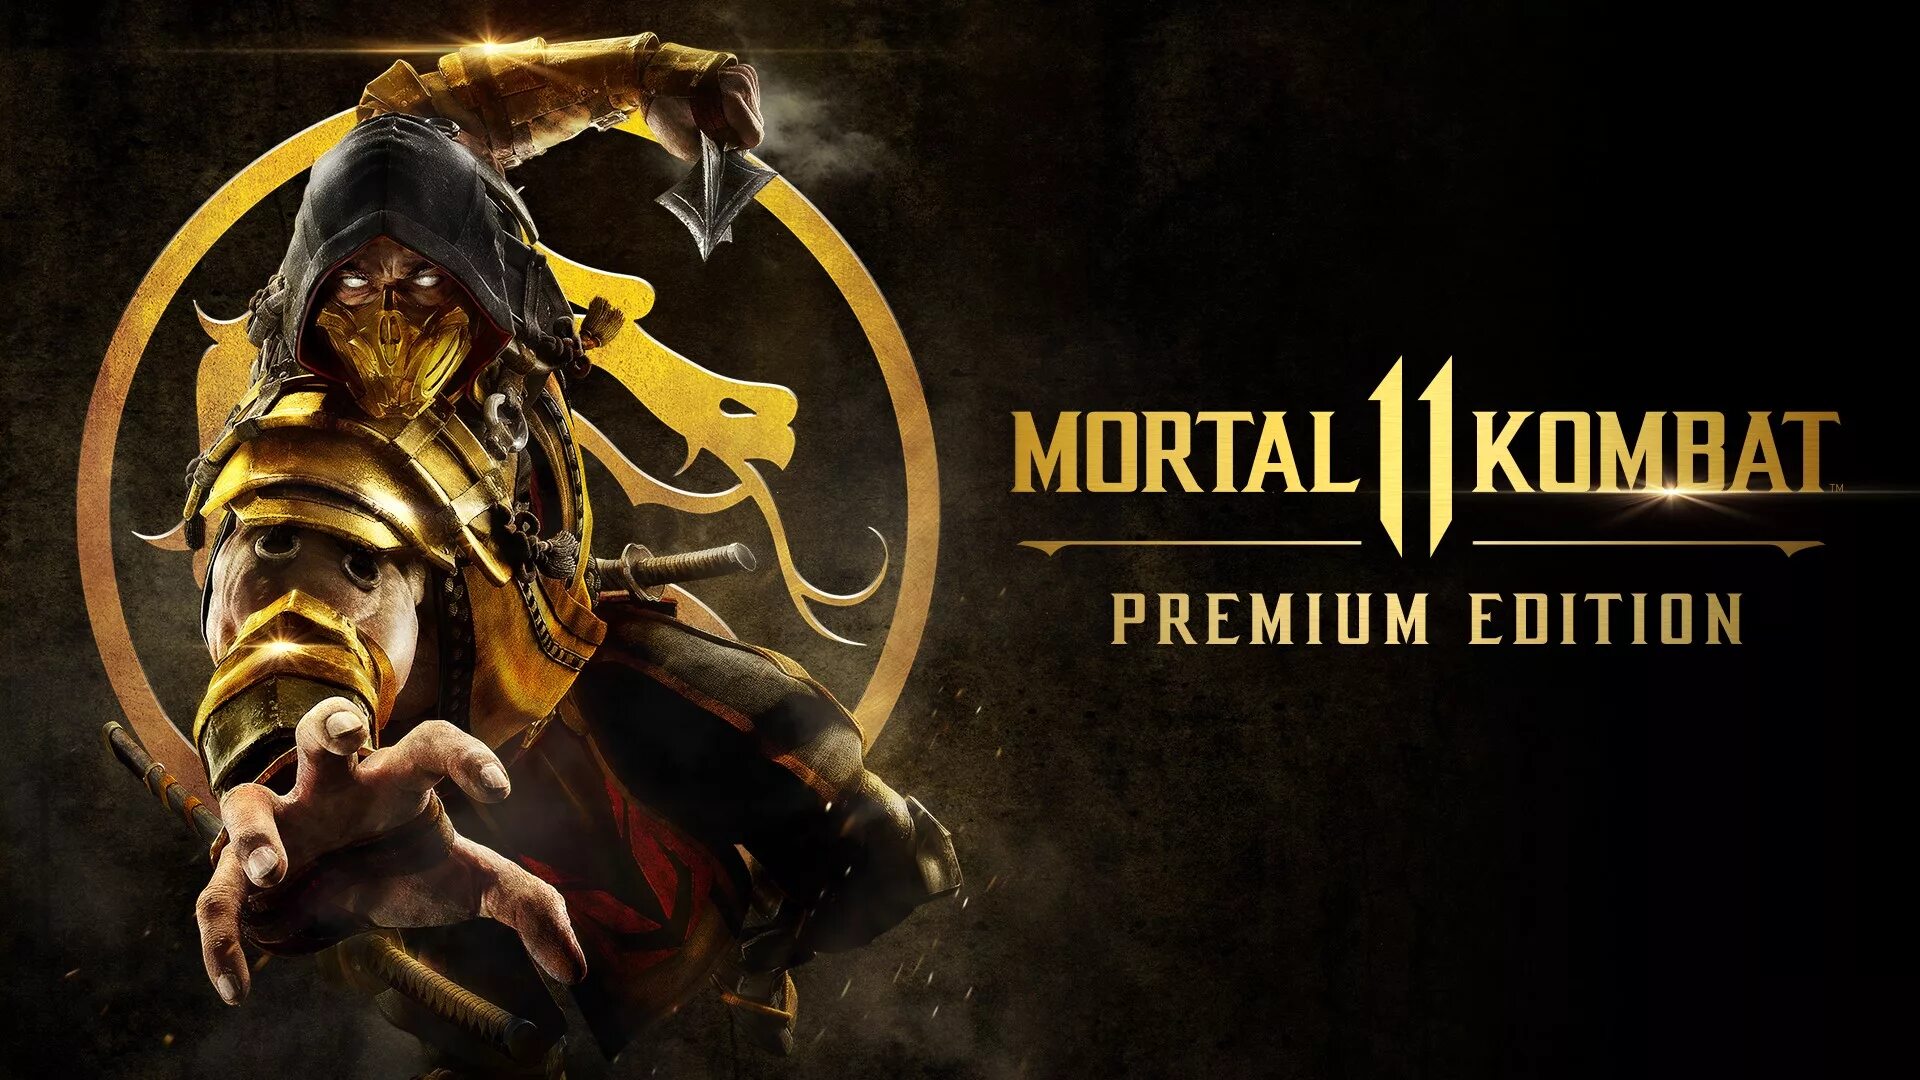 Мк 11 ultimate. MK 11 Ultimate. Mortal Kombat 11 (ps4). Mortal Kombat 11. Premium Edition. PLAYSTATION 4 Mortal Kombat 11 обложка.